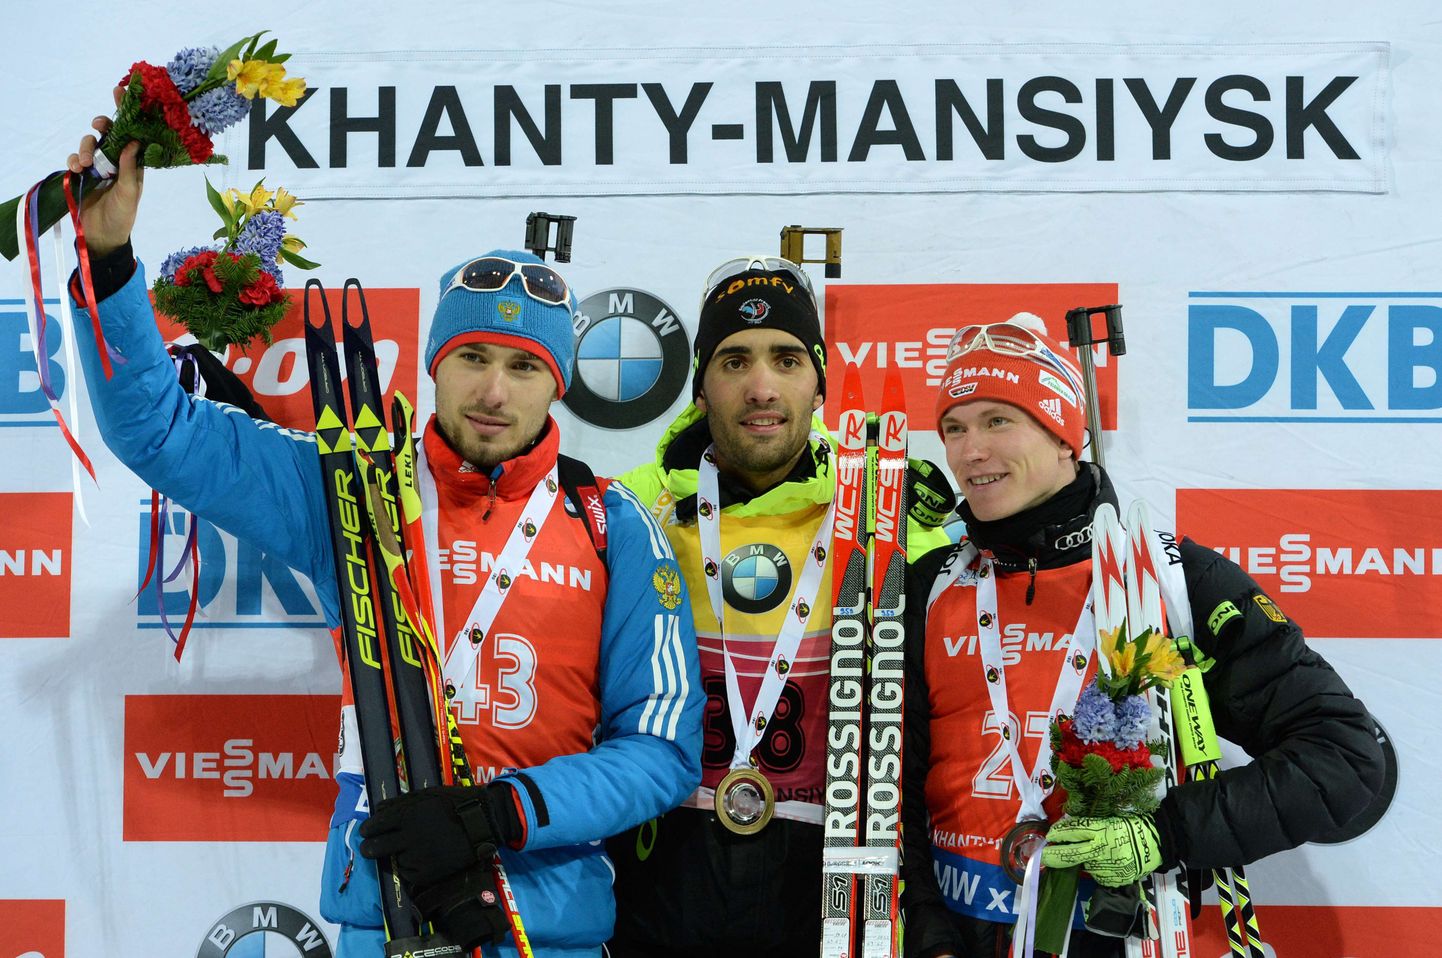 Мартен Фуркад (в центре) с медалью победителя гонки.